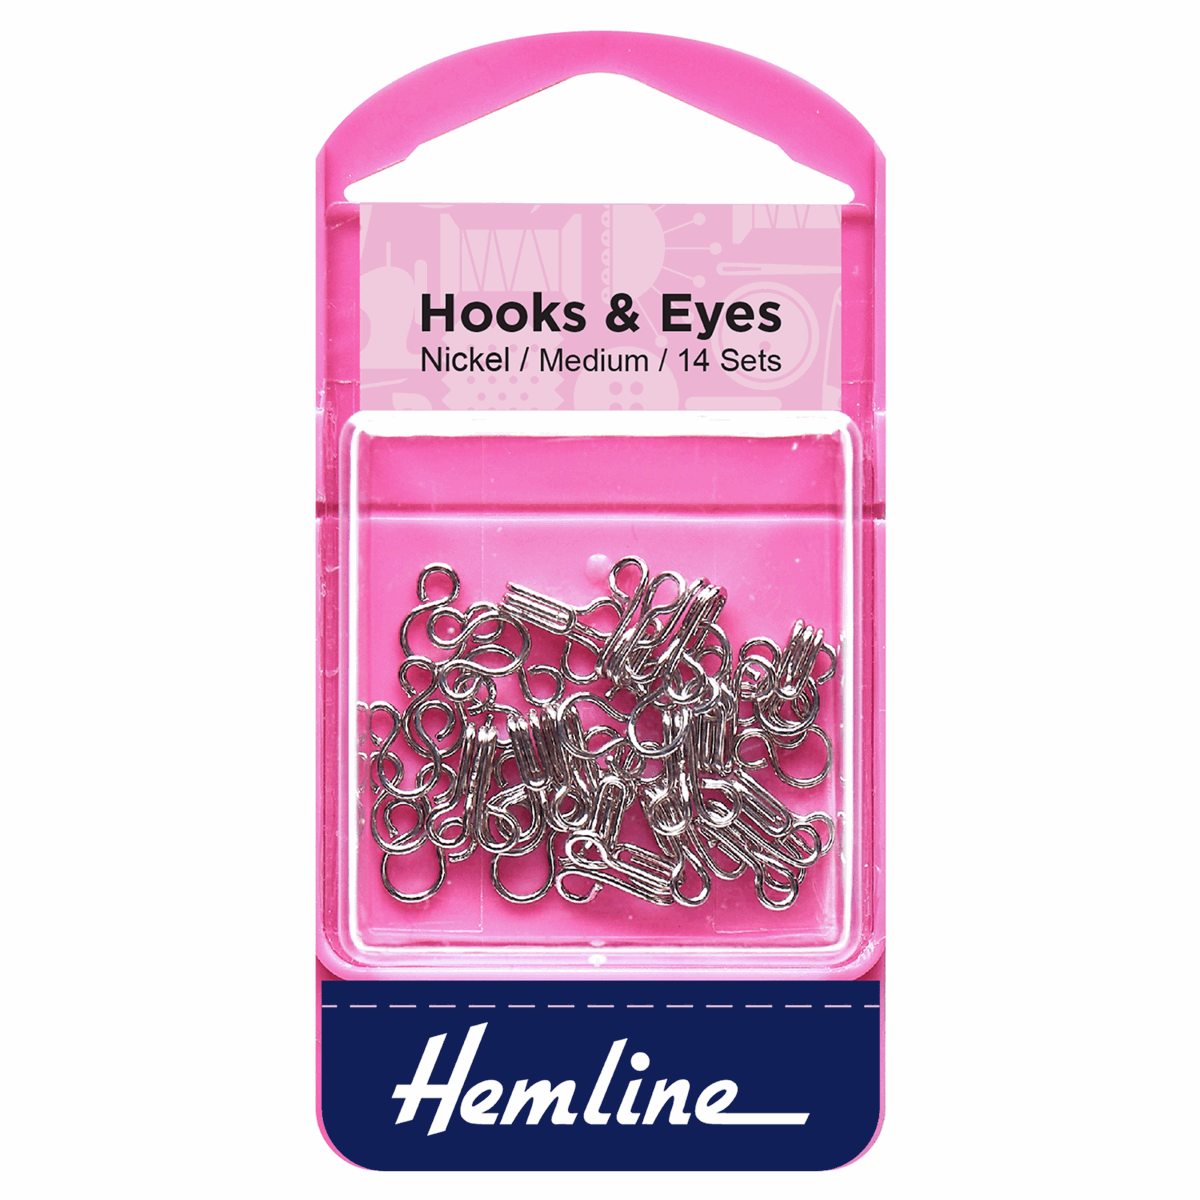 Hooks and Eyes: Nickel